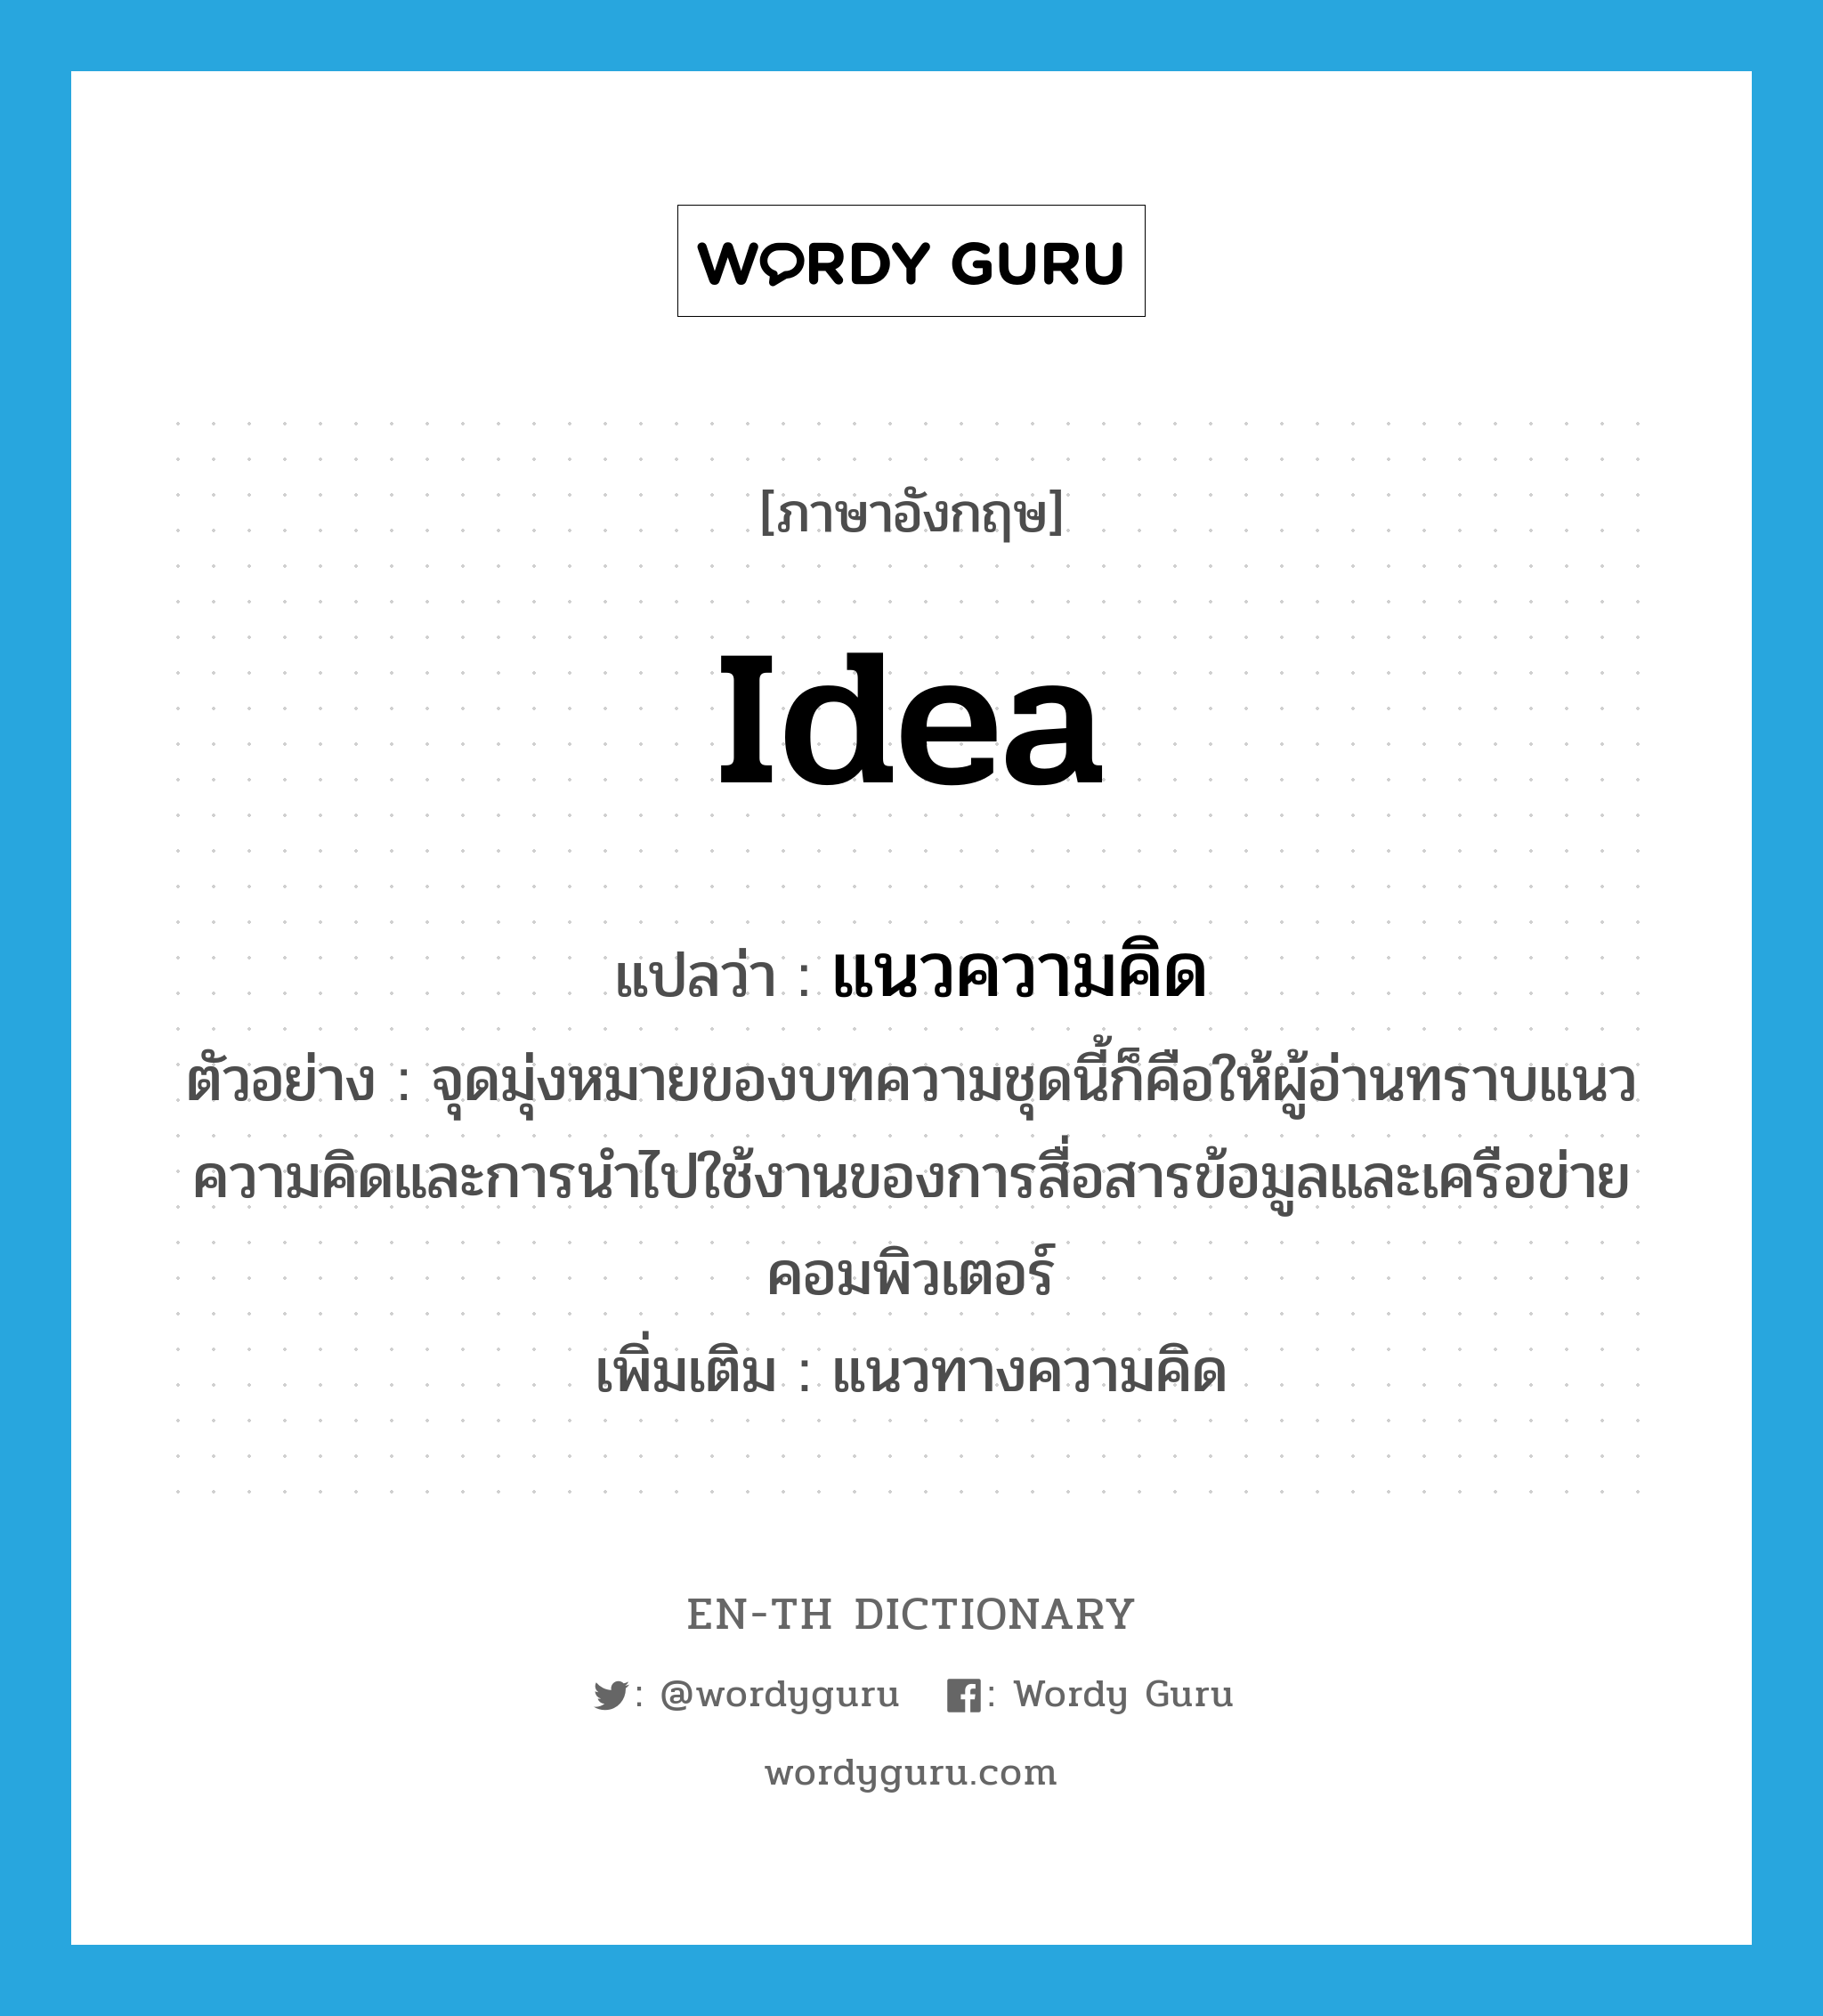 idea แปลว่า?, คำศัพท์ภาษาอังกฤษ idea แปลว่า แนวความคิด ประเภท N ตัวอย่าง จุดมุ่งหมายของบทความชุดนี้ก็คือให้ผู้อ่านทราบแนวความคิดและการนำไปใช้งานของการสื่อสารข้อมูลและเครือข่ายคอมพิวเตอร์ เพิ่มเติม แนวทางความคิด หมวด N